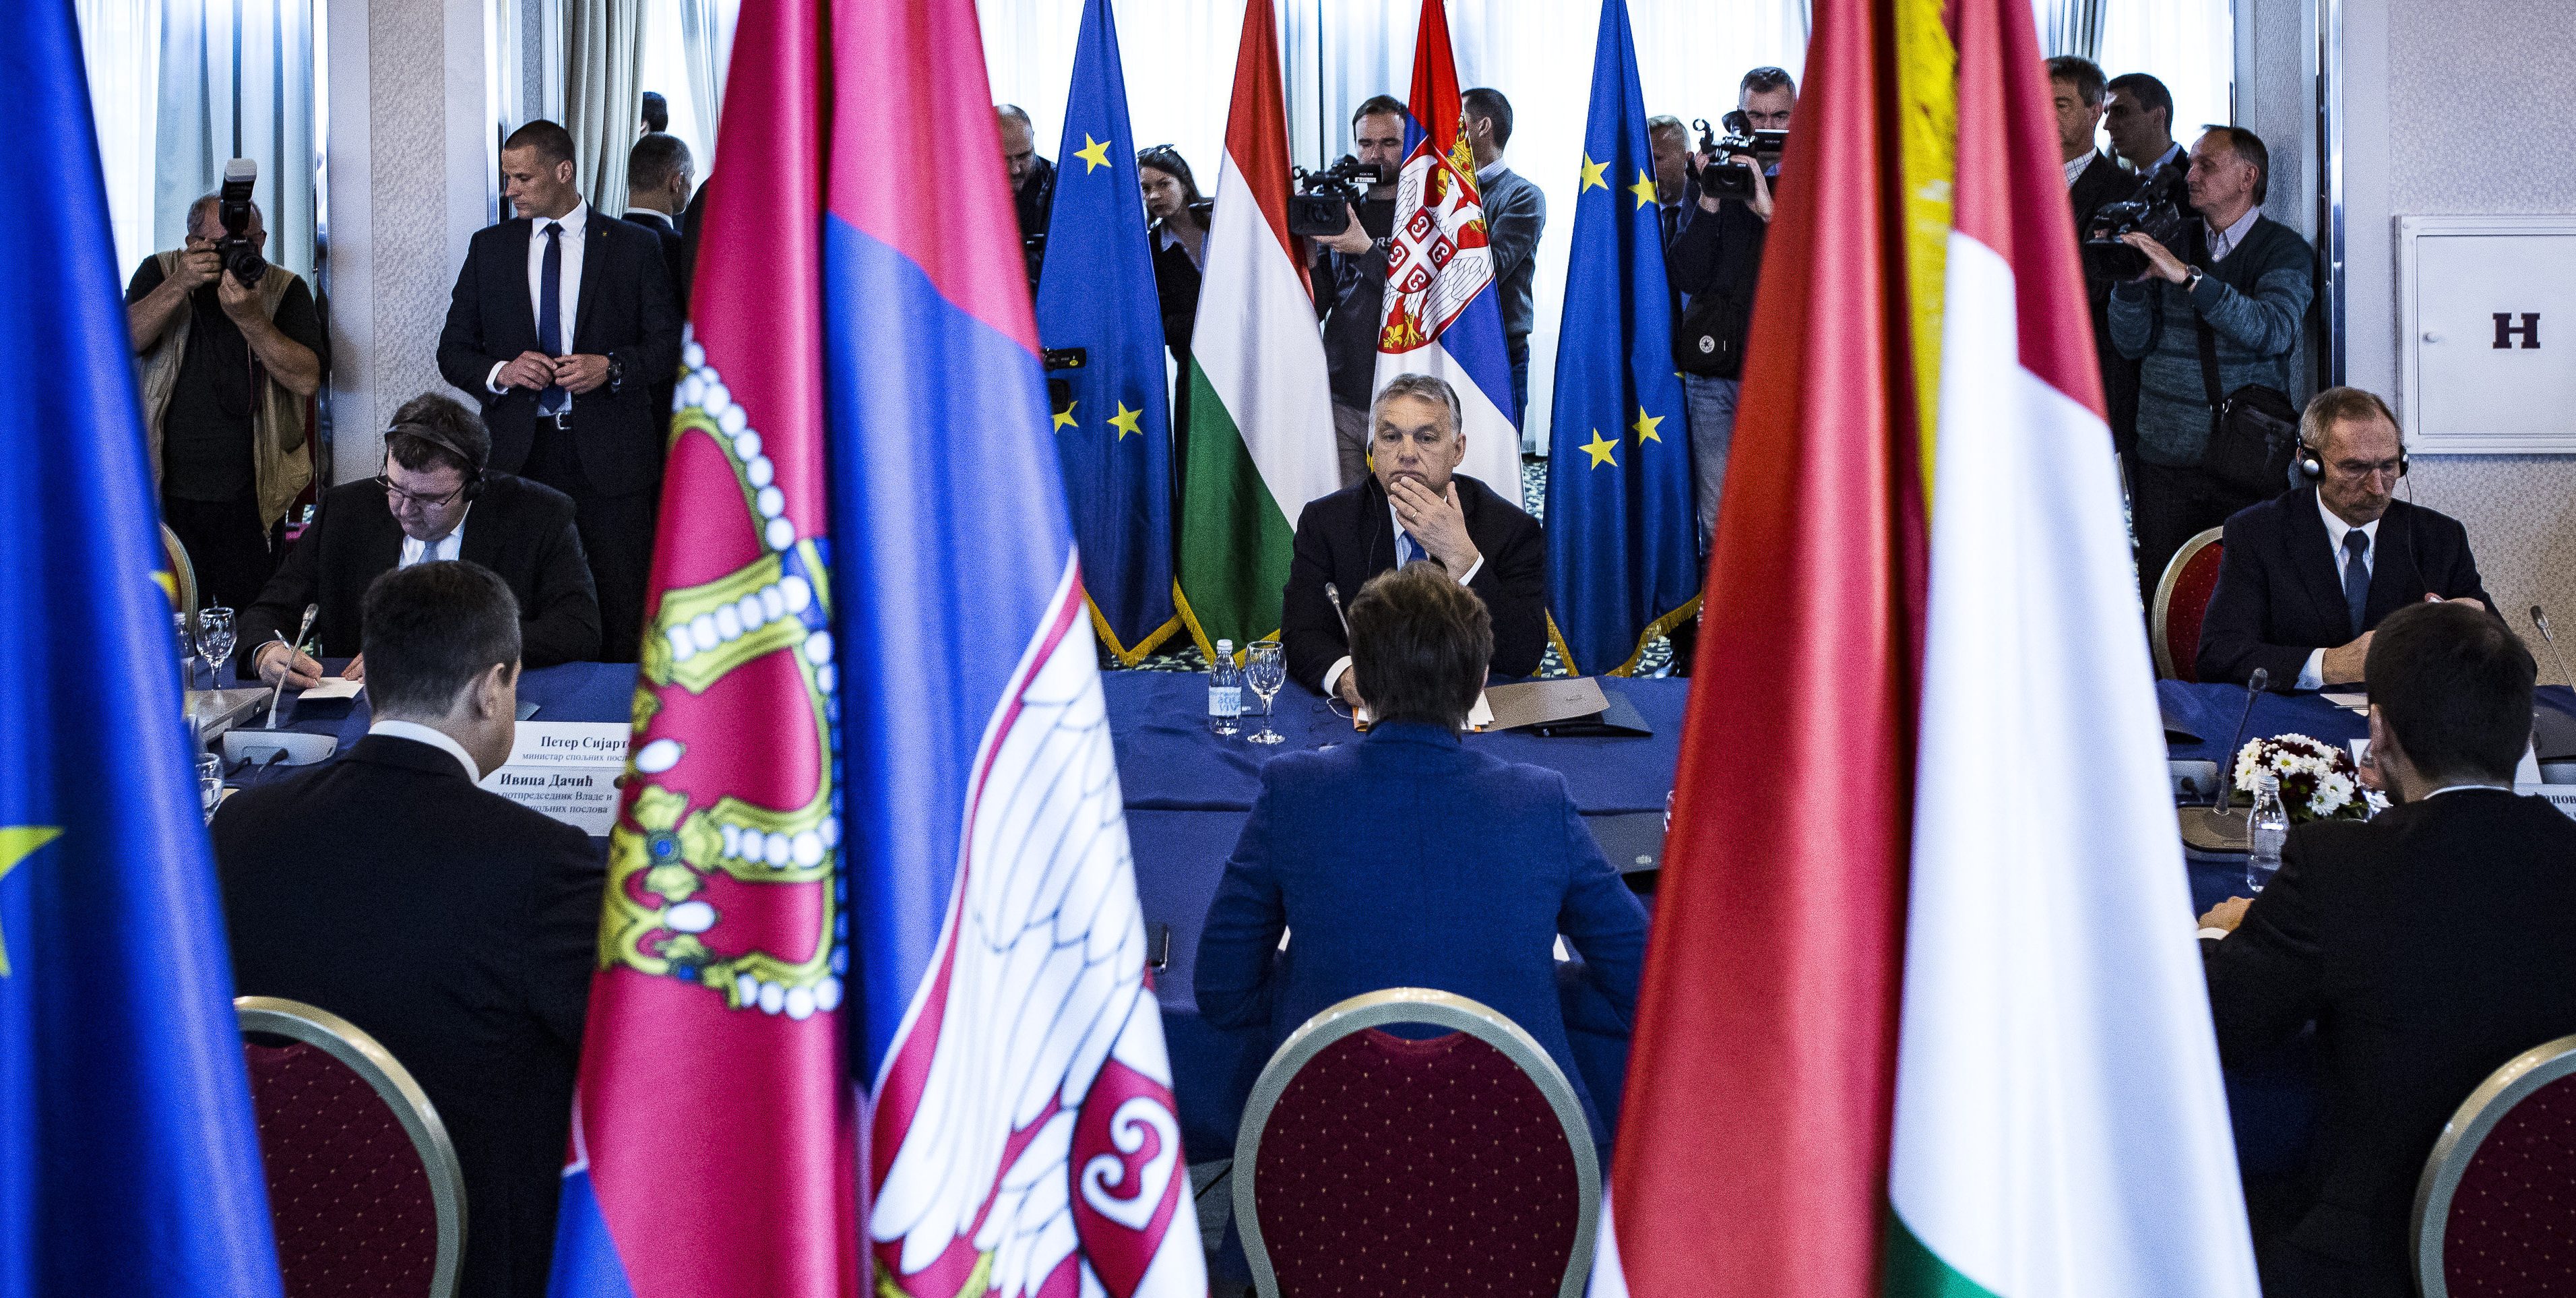 Совместное заседание правительств Сербии и Венгрии прошло в Сербии